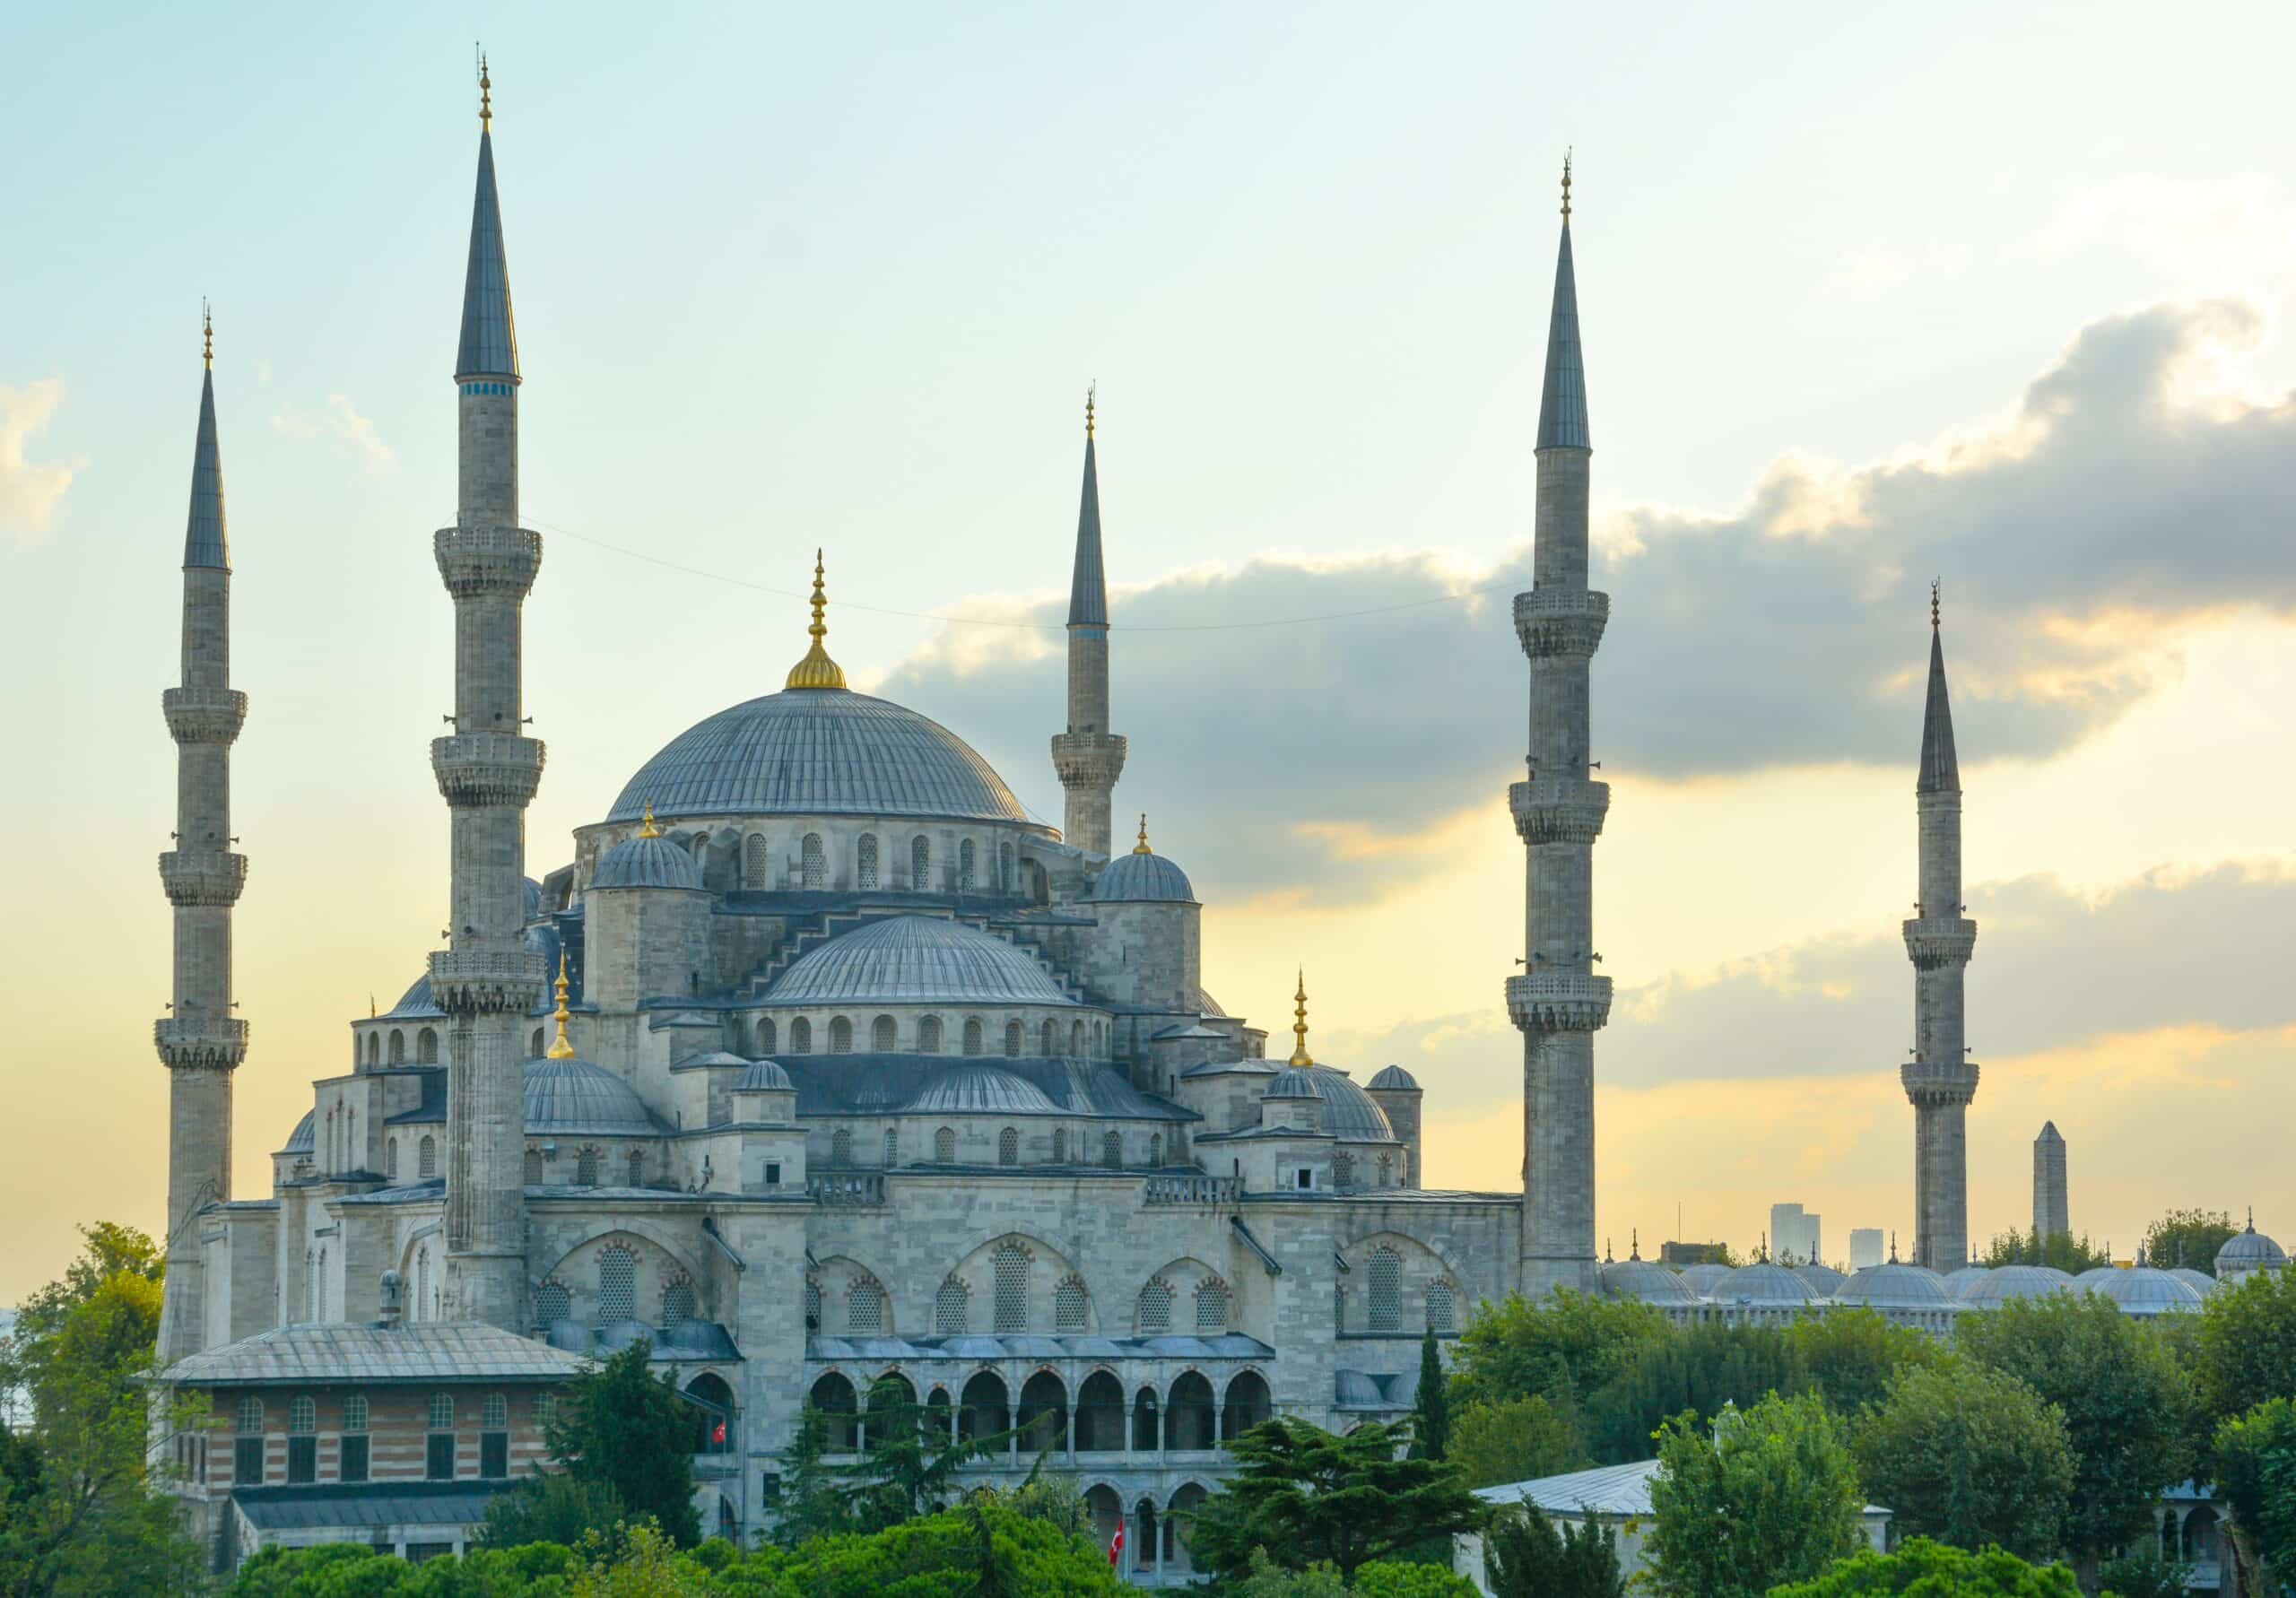 Vista da hora dourada da magnífica Mesquita do Sultão Ahmet (Sultão Ahmet Camii) em Istambul, Turquia